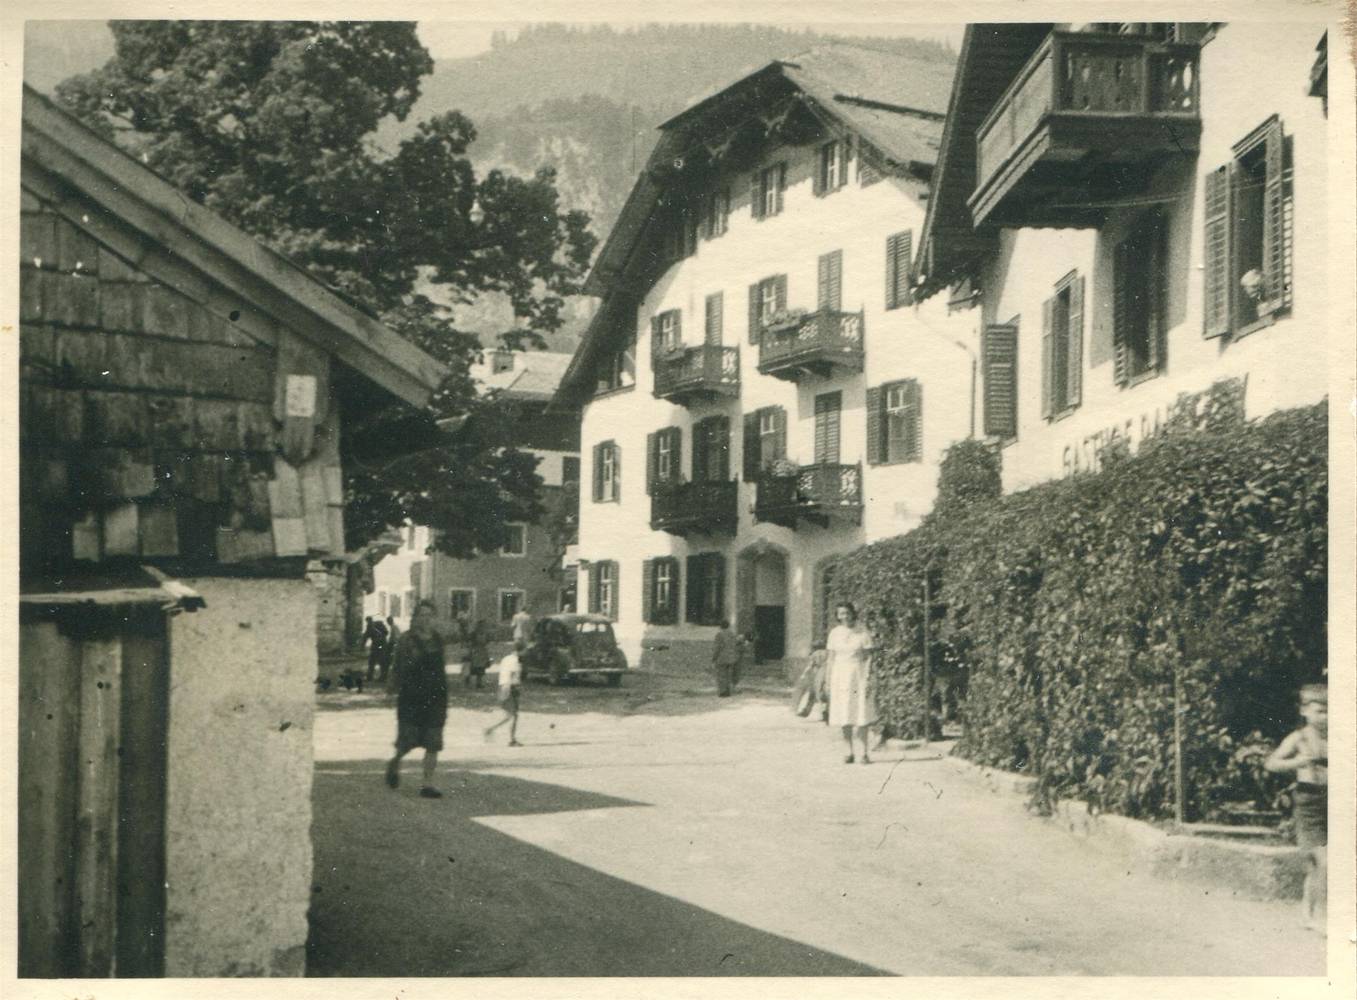 UNBEKANNT (Person), Ortsteil von St. Gilgen am Wolfgangsee, 1930 - 1950, Inv.-Nr.Foto 41747